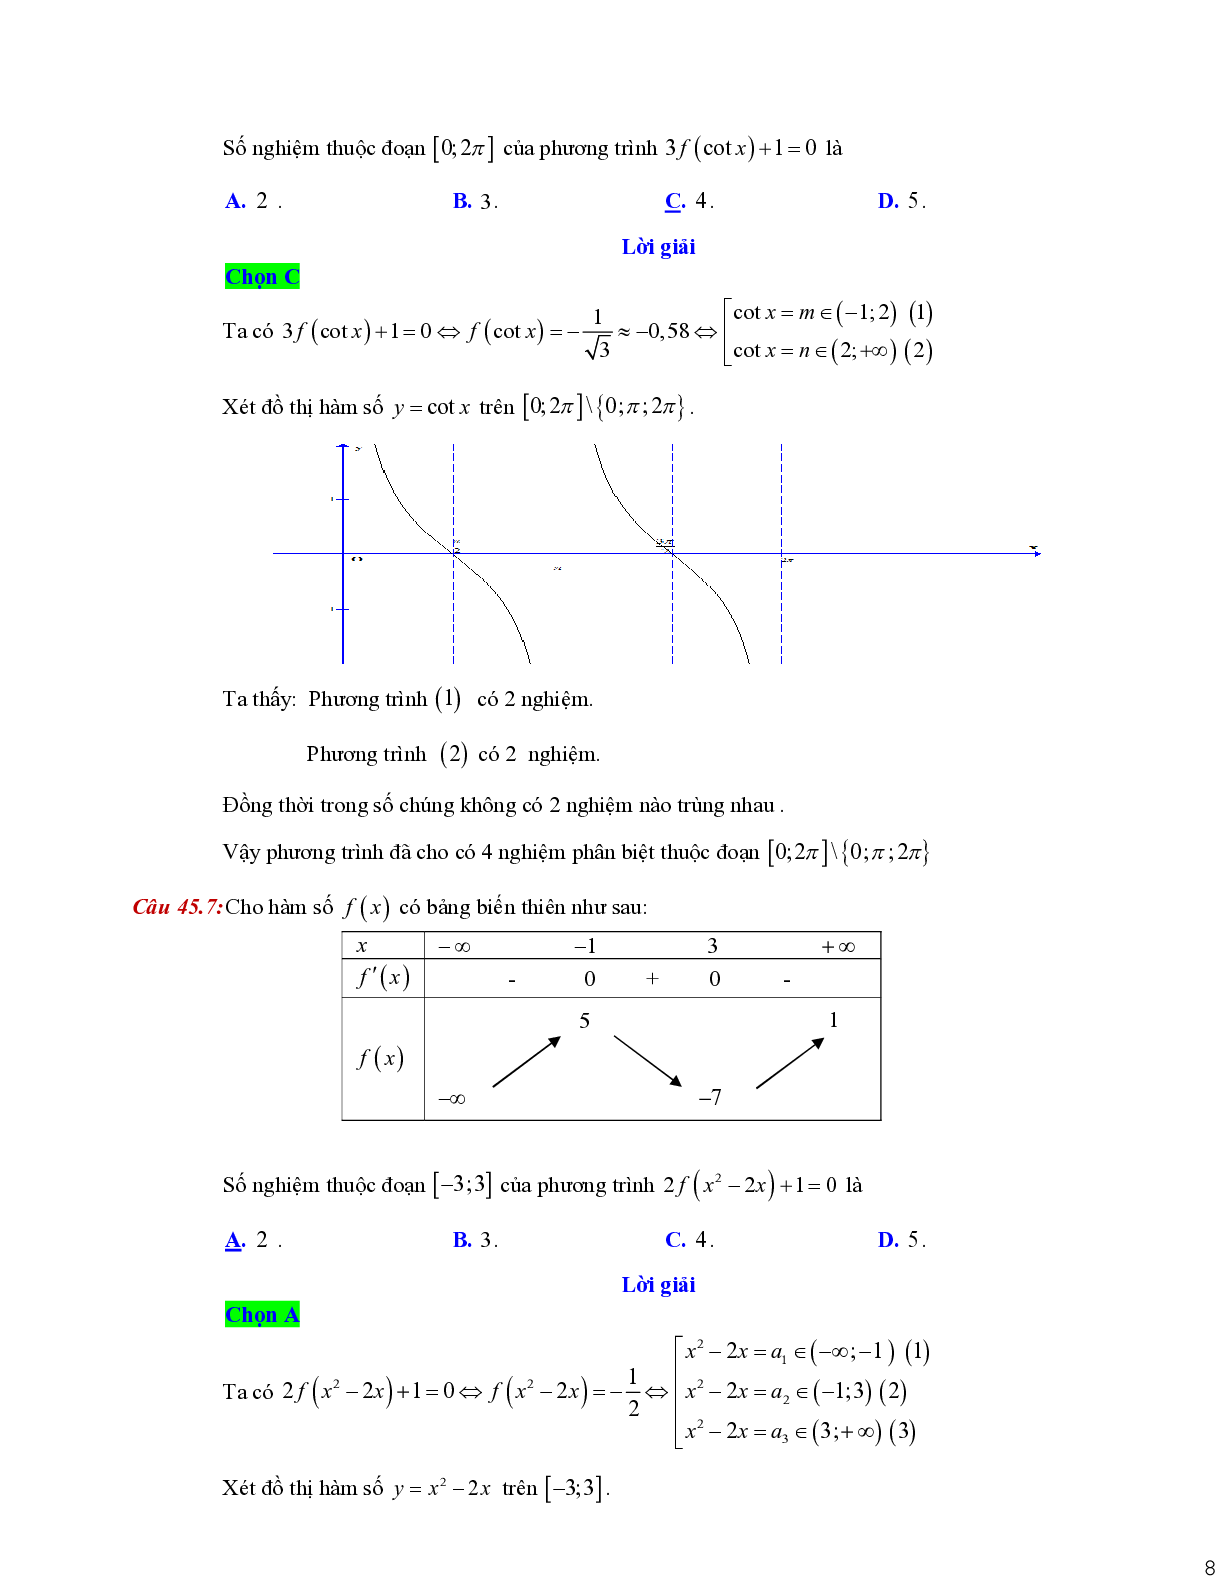 Dạng toán liên quan tới giao điểm của hai đồ thị (trang 8)